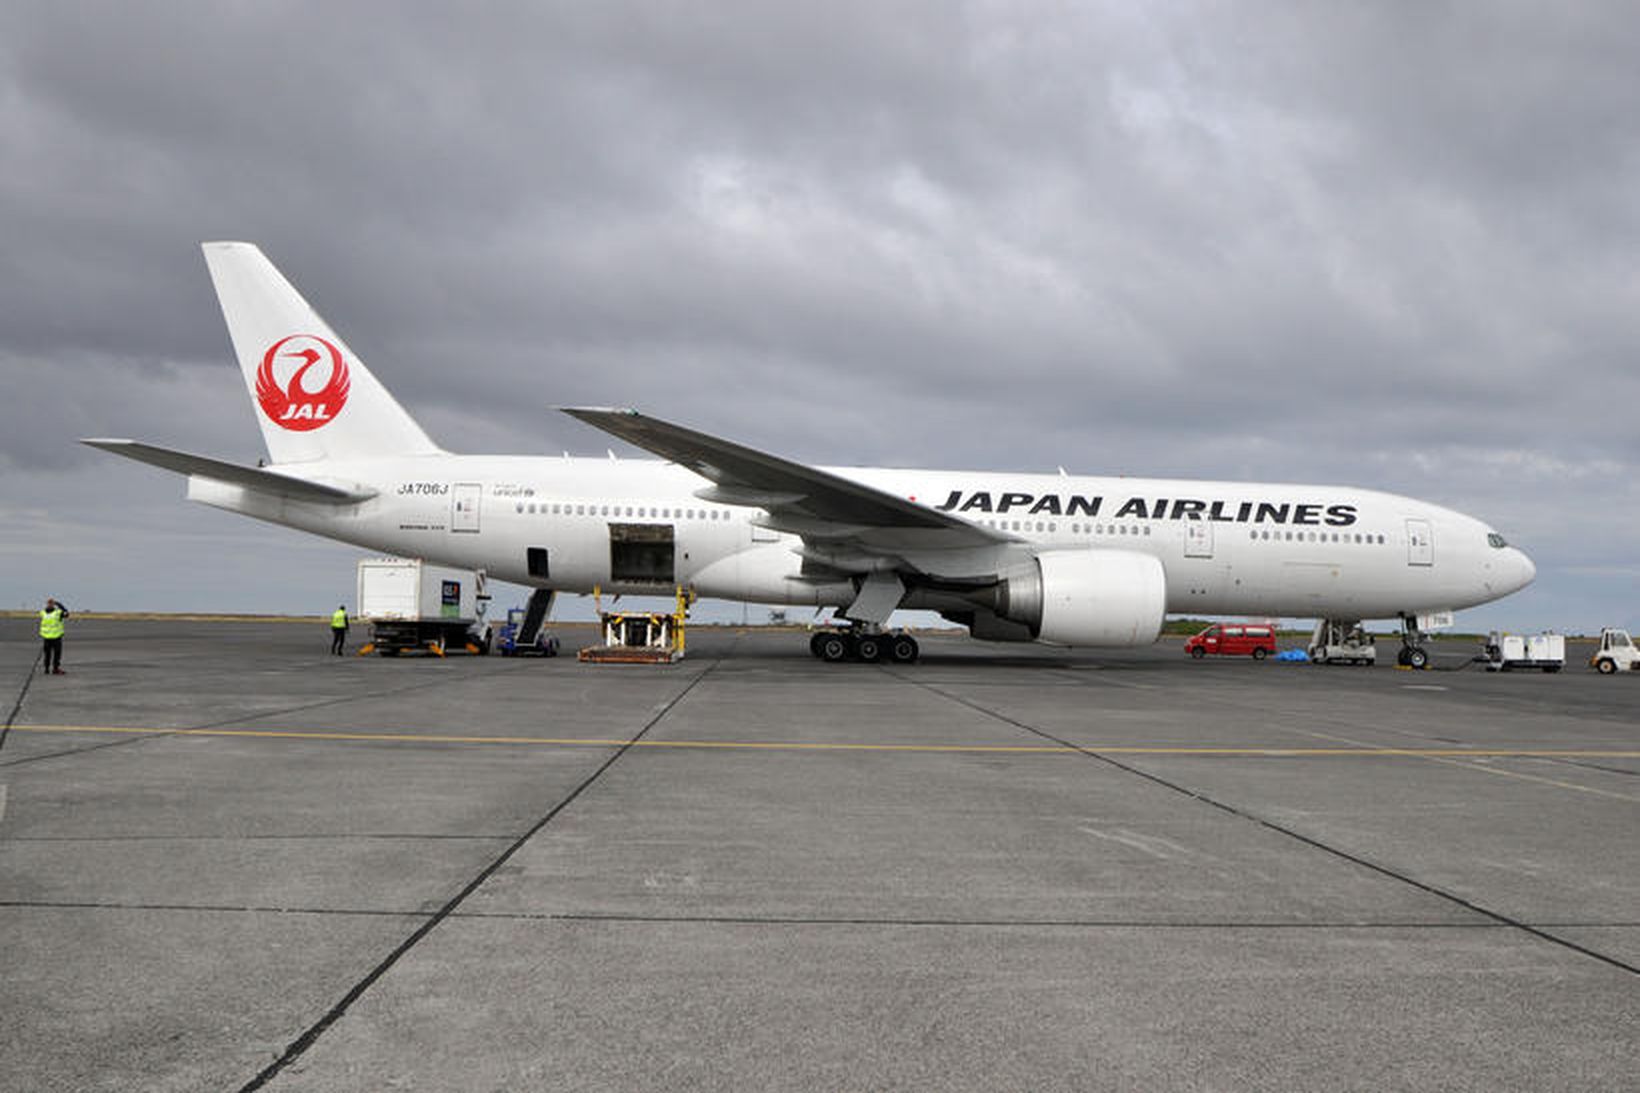 Flugvél Japan Airlines á Keflavíkurflugvelli í dag.